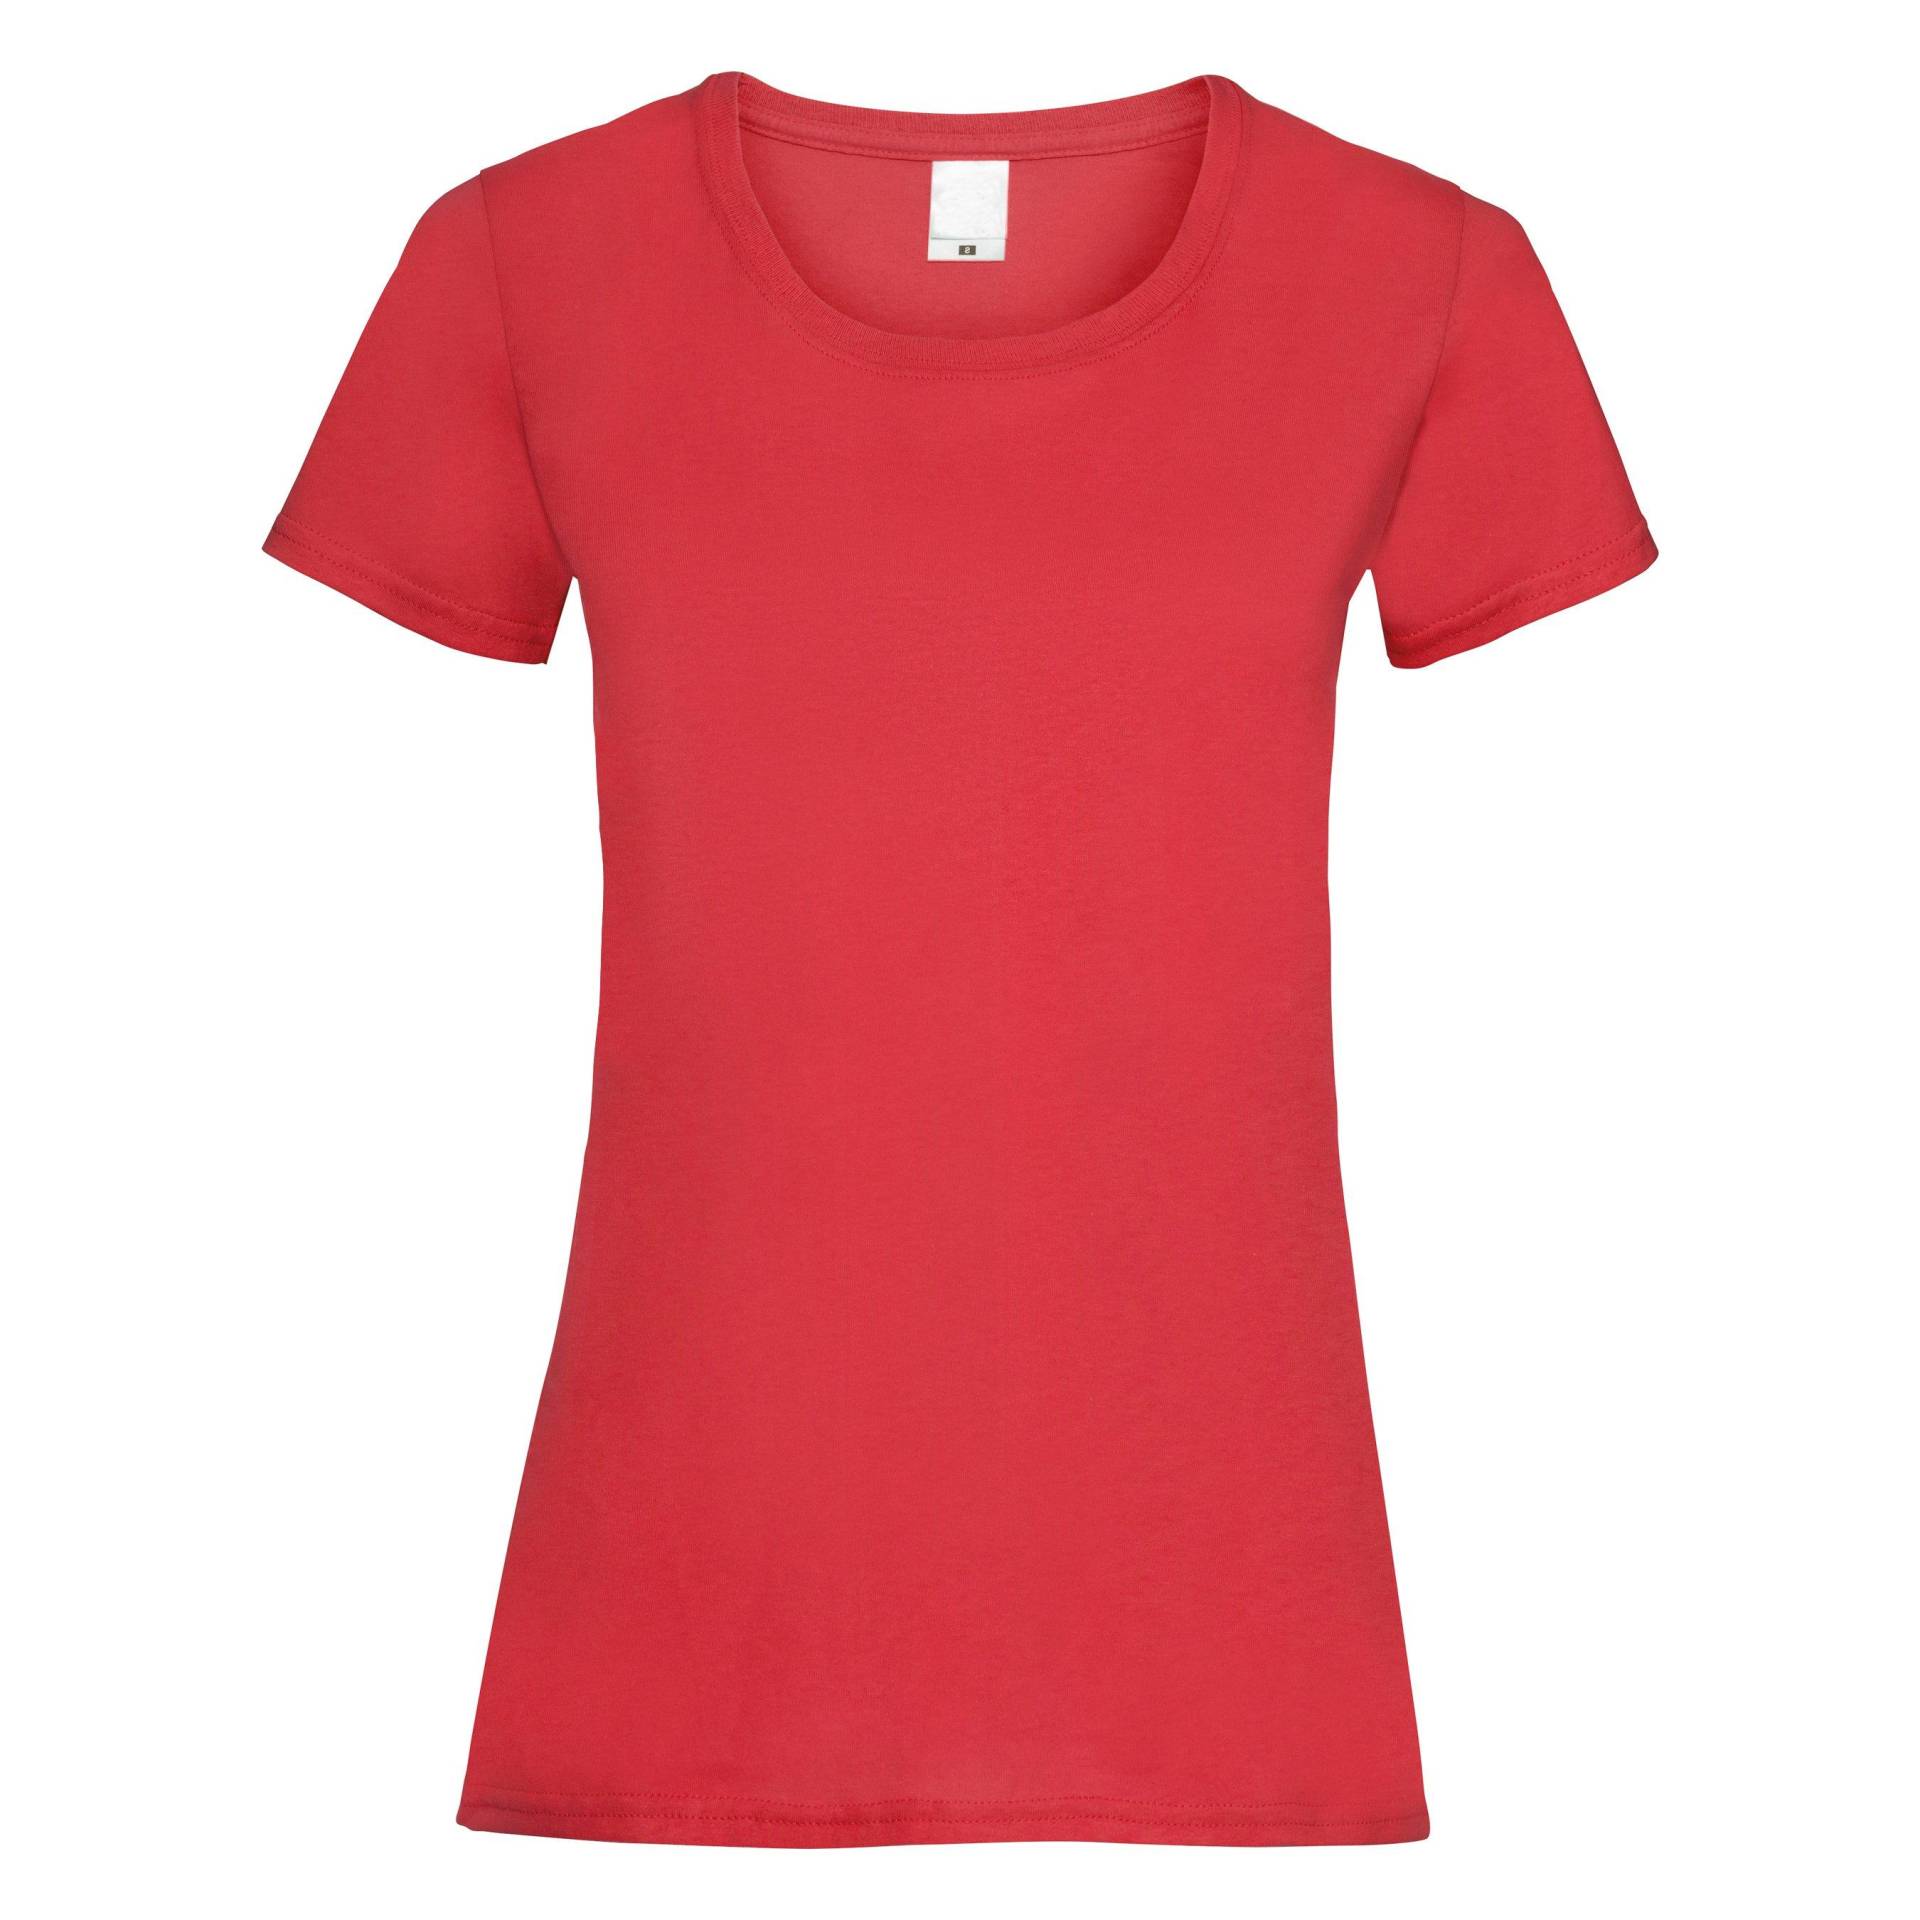 Kurzarm Tshirt Damen Rot Bunt L von Universal Textiles